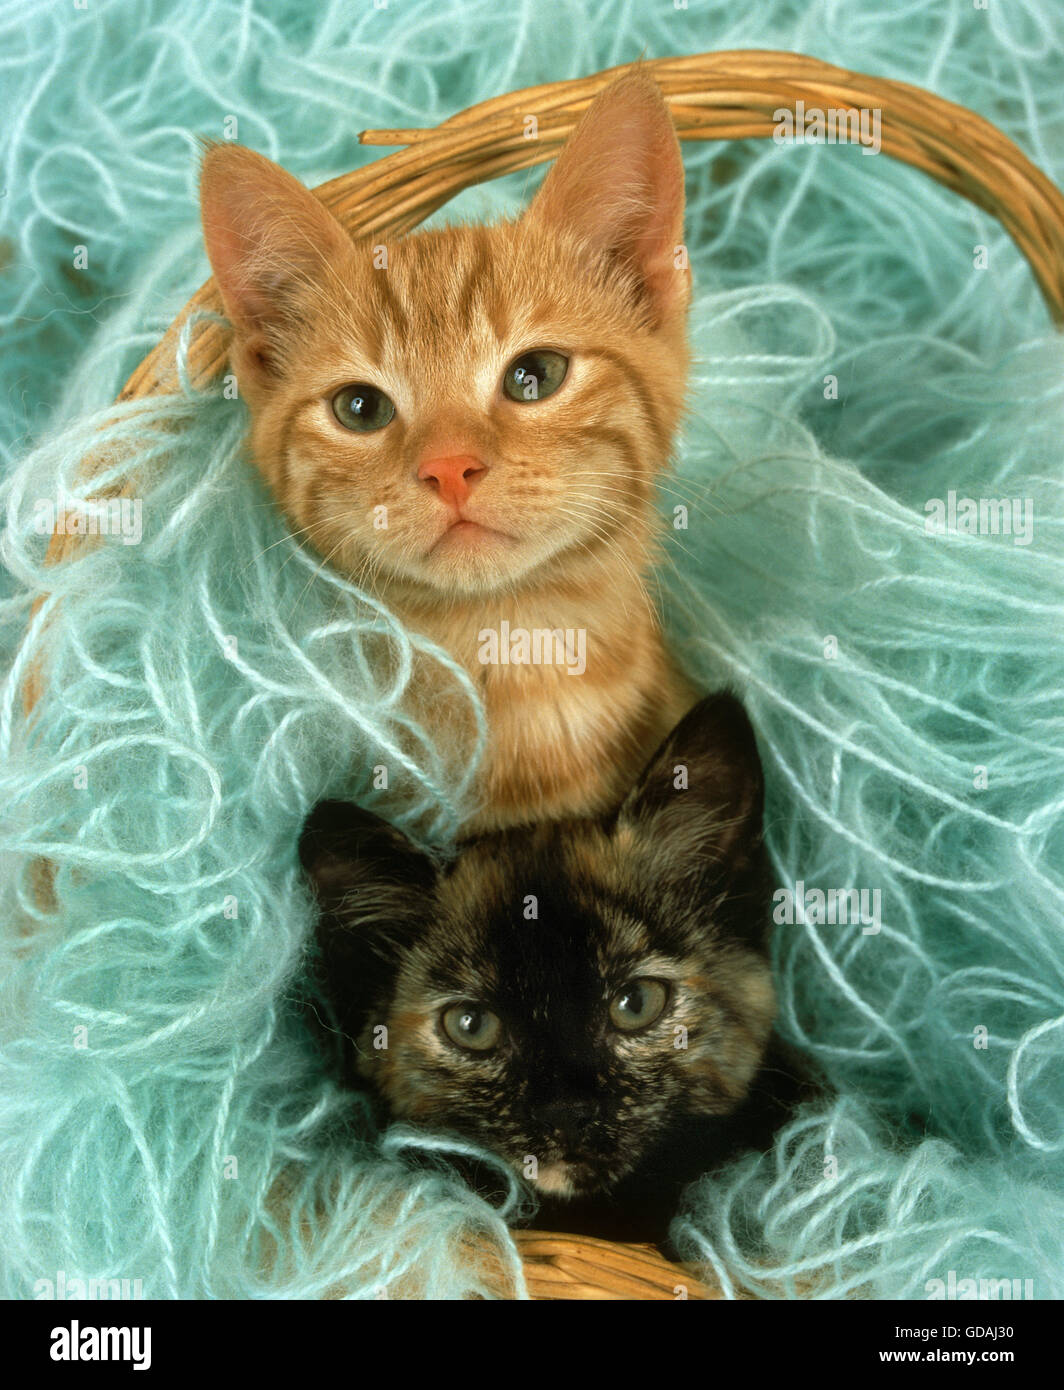 Chat domestique, de chatons jouant de la laine Banque D'Images